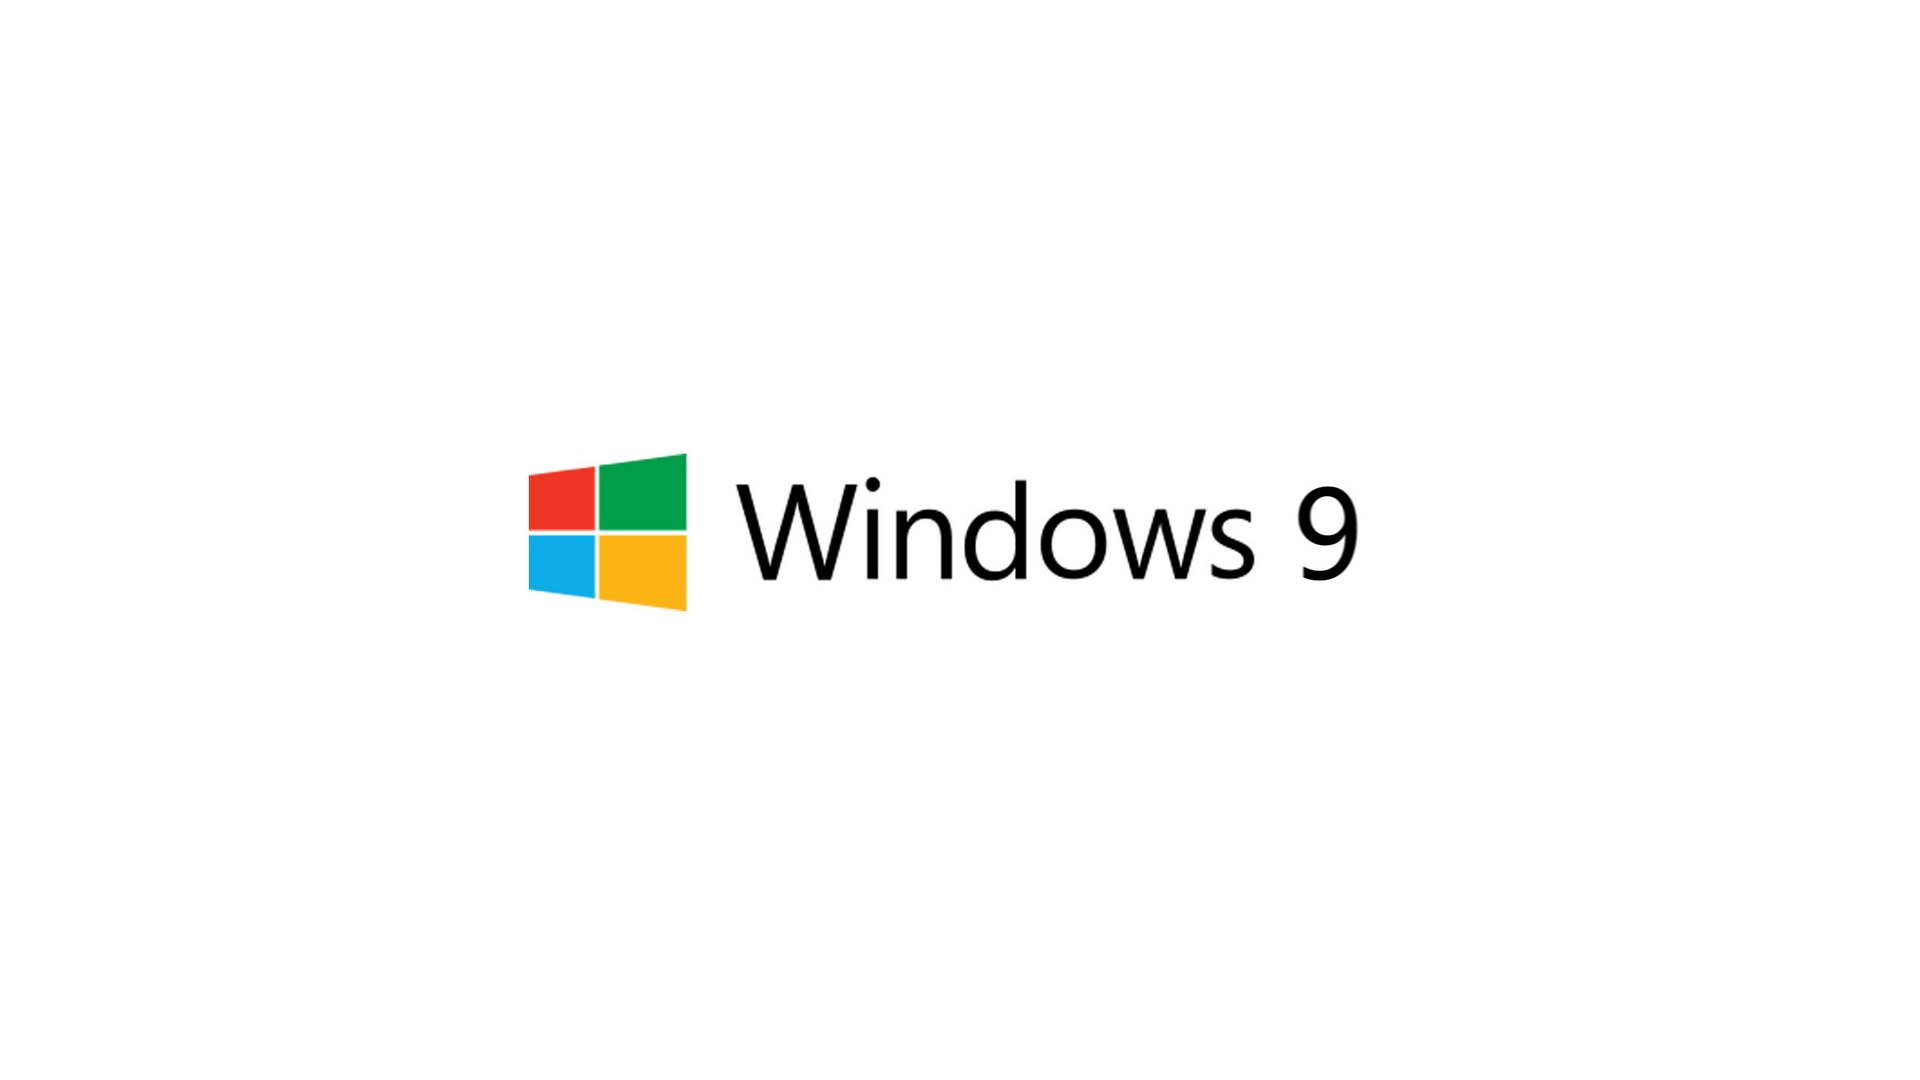 微软 Windows 9 系统主题 高清壁纸7 - 1920x1080